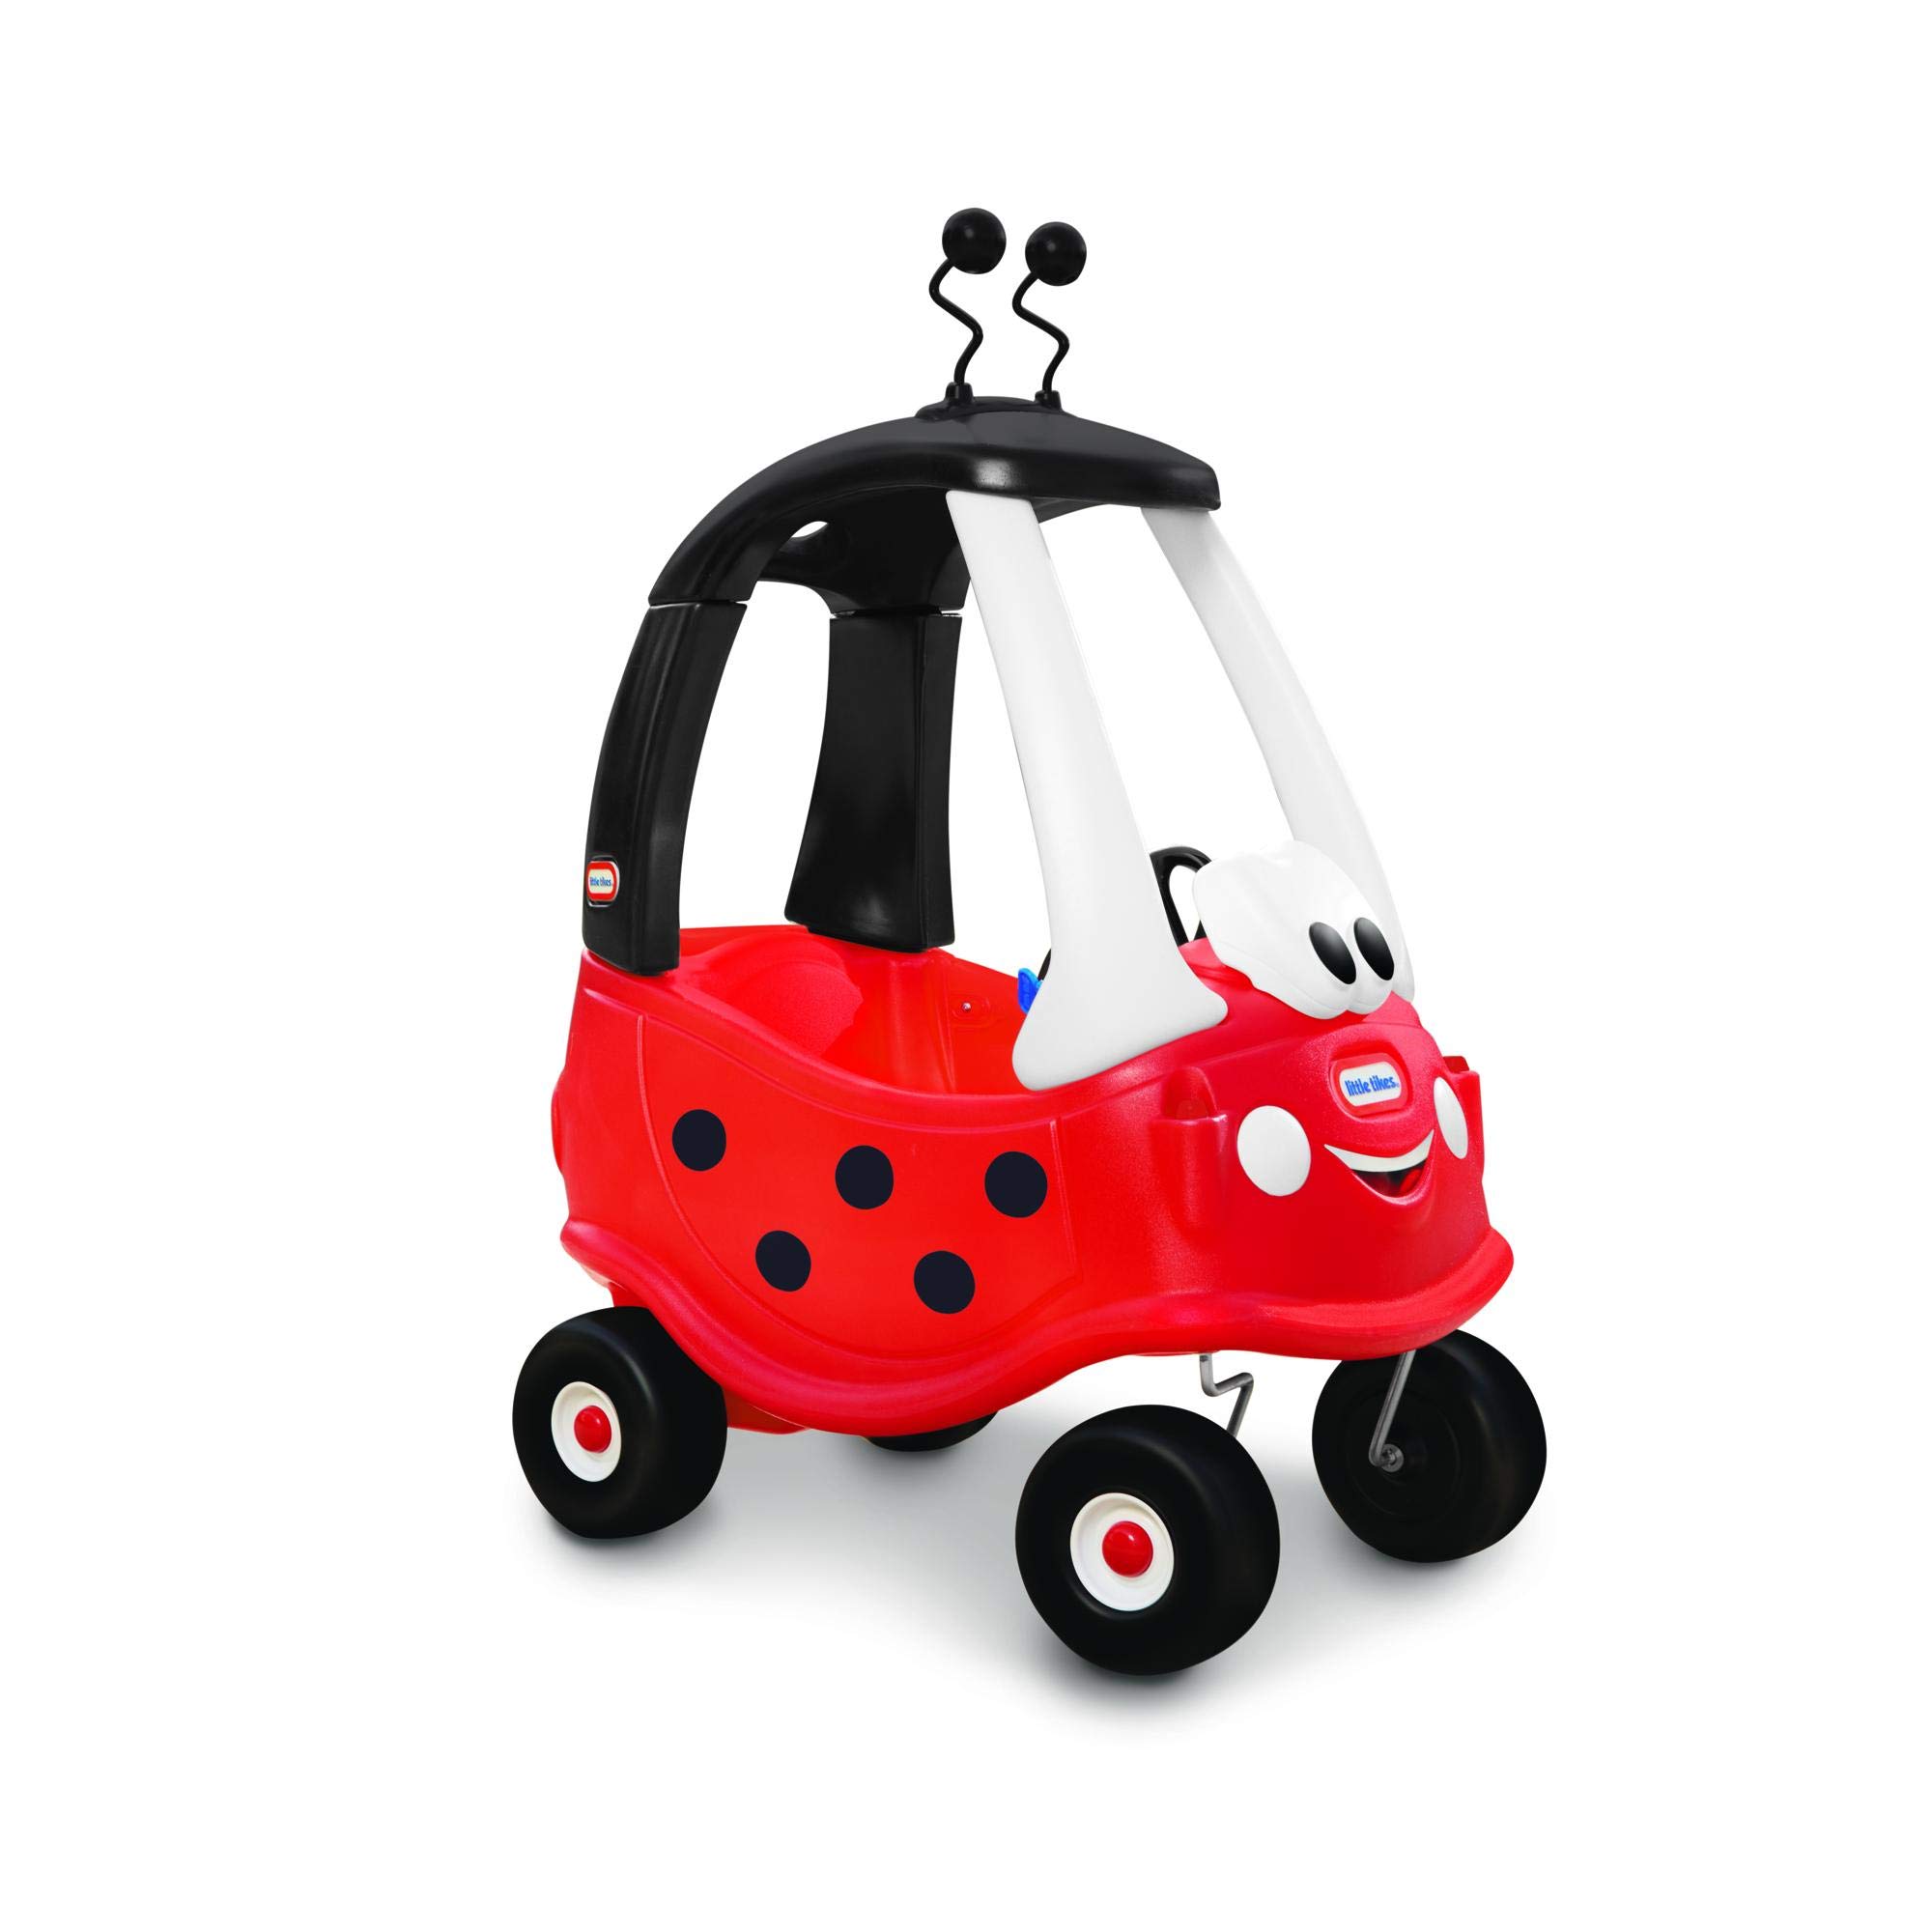 Little Tikes Ladybug Cozy Coupe Ride-On Car – Amazon限定 (マルチカラー)、91cmx75cmx42cm